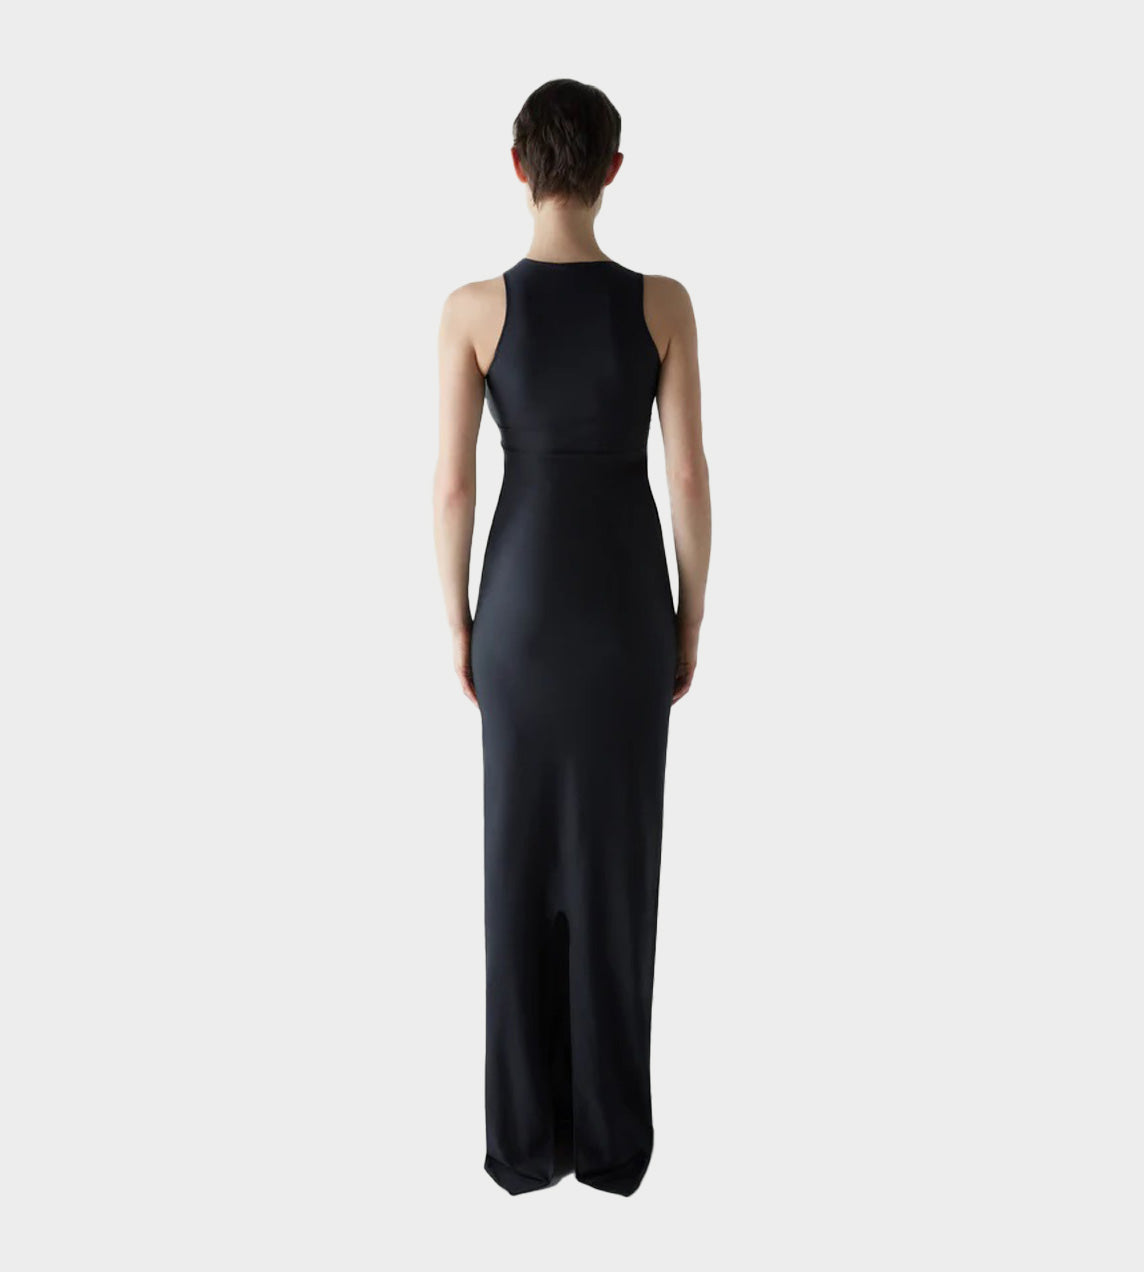 Coperni - Single Emoji Dress Black